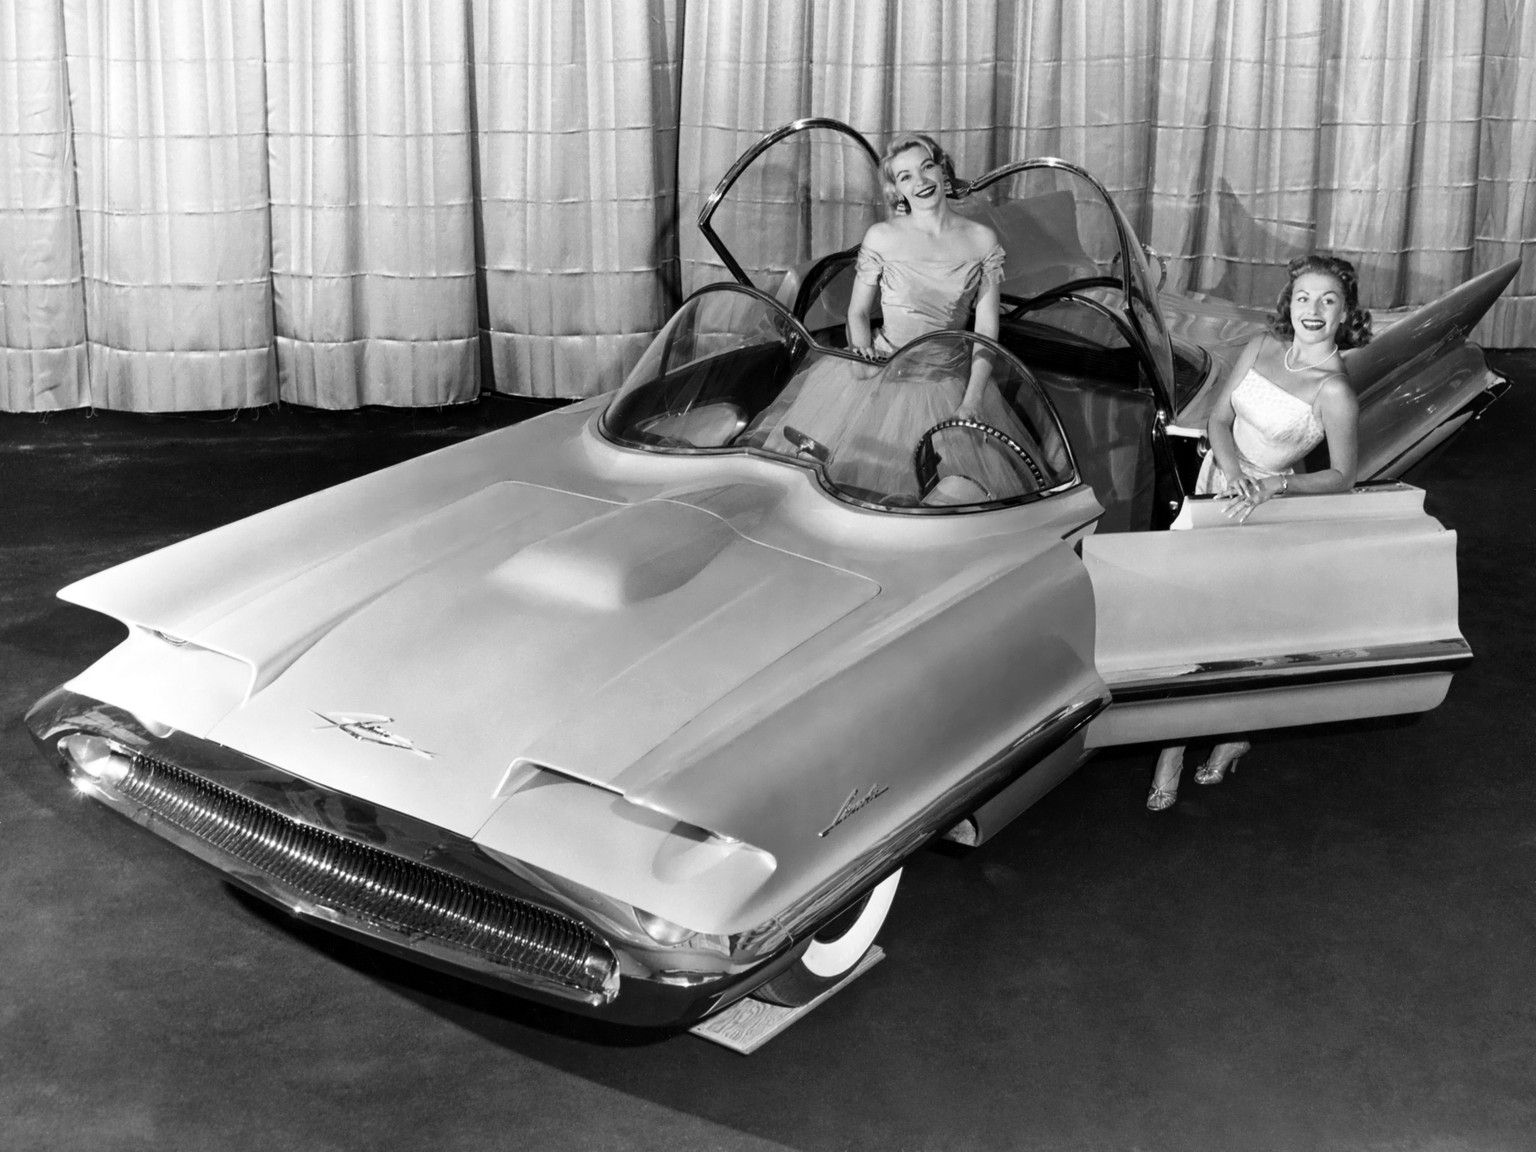 lincoln futura 1955 http://oldconceptcars.com/1930-2004/lincoln-futura-concept-car-1955/